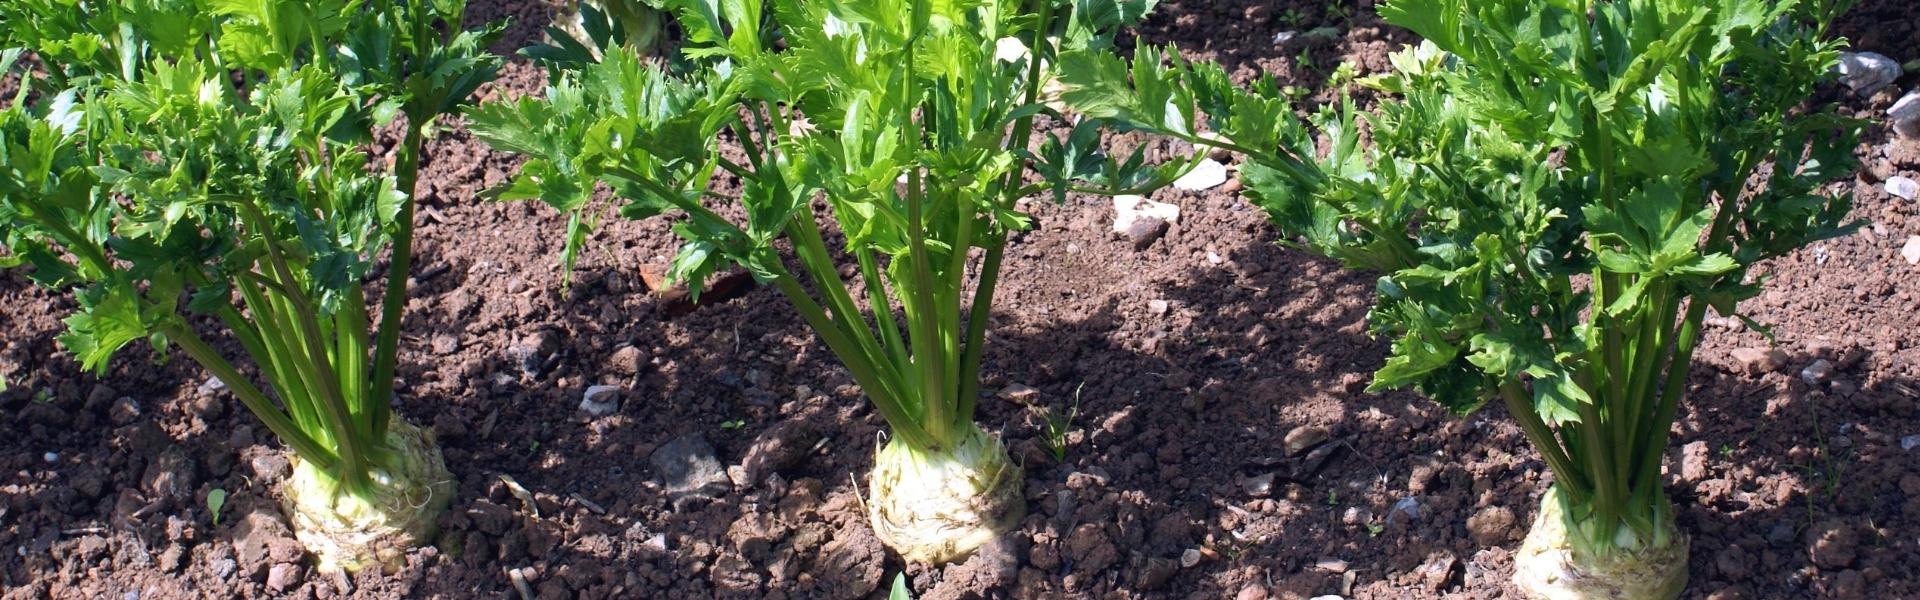 Liściolubka selerowa – jak zwalczać szkodnika warzyw?